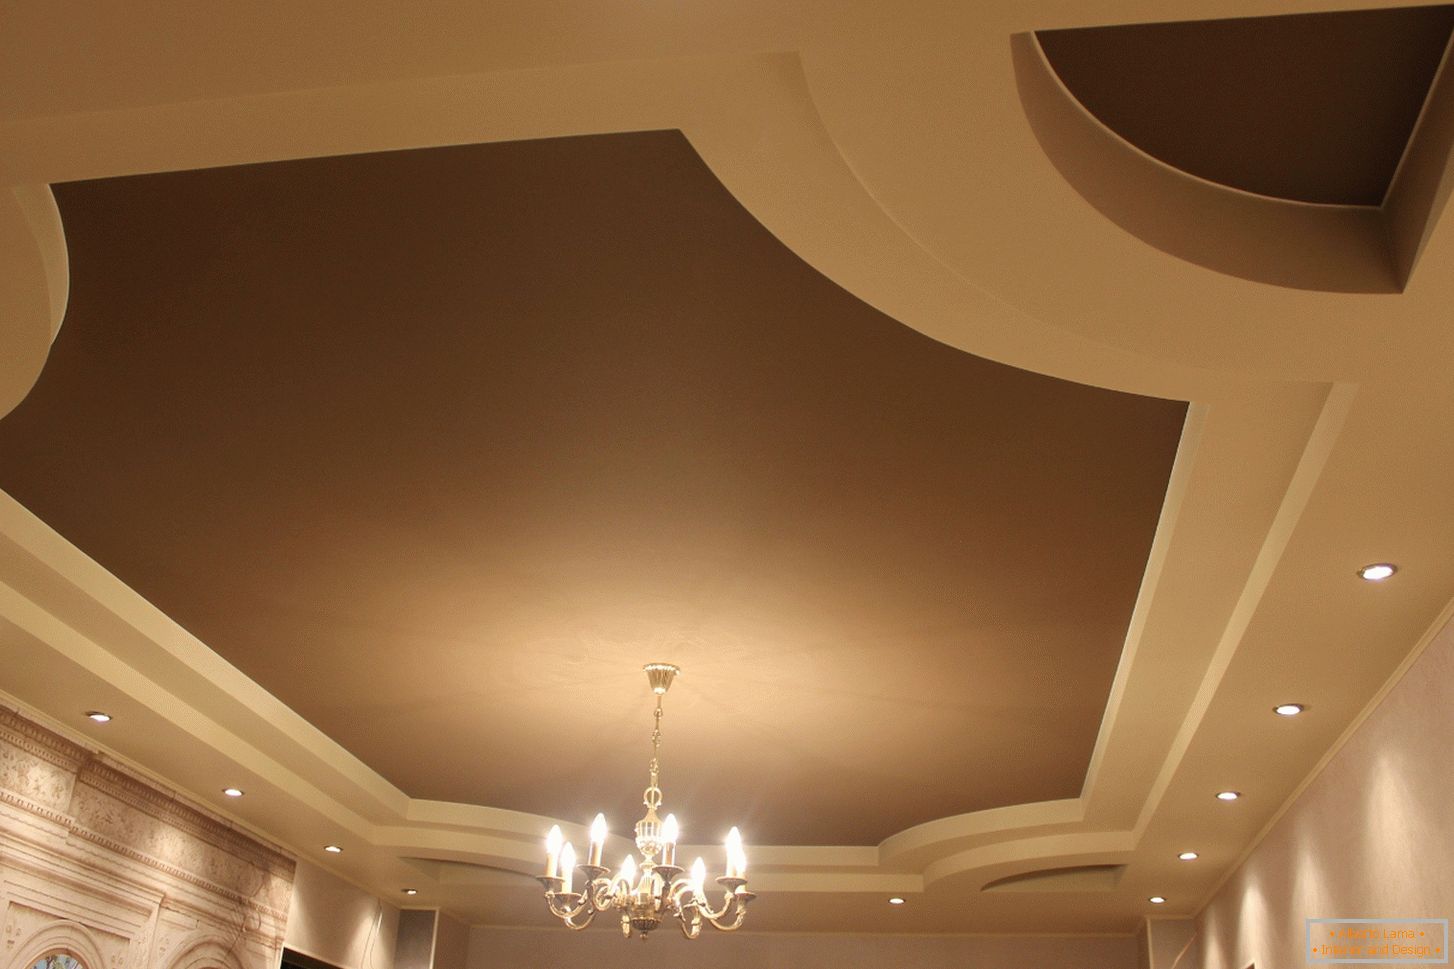 Soffitti in PVC elastico opaco per una camera per gli ospiti in una casa di campagna. La costruzione a più livelli dei soffitti sembra interessante nei colori beige chiaro e marrone scuro.